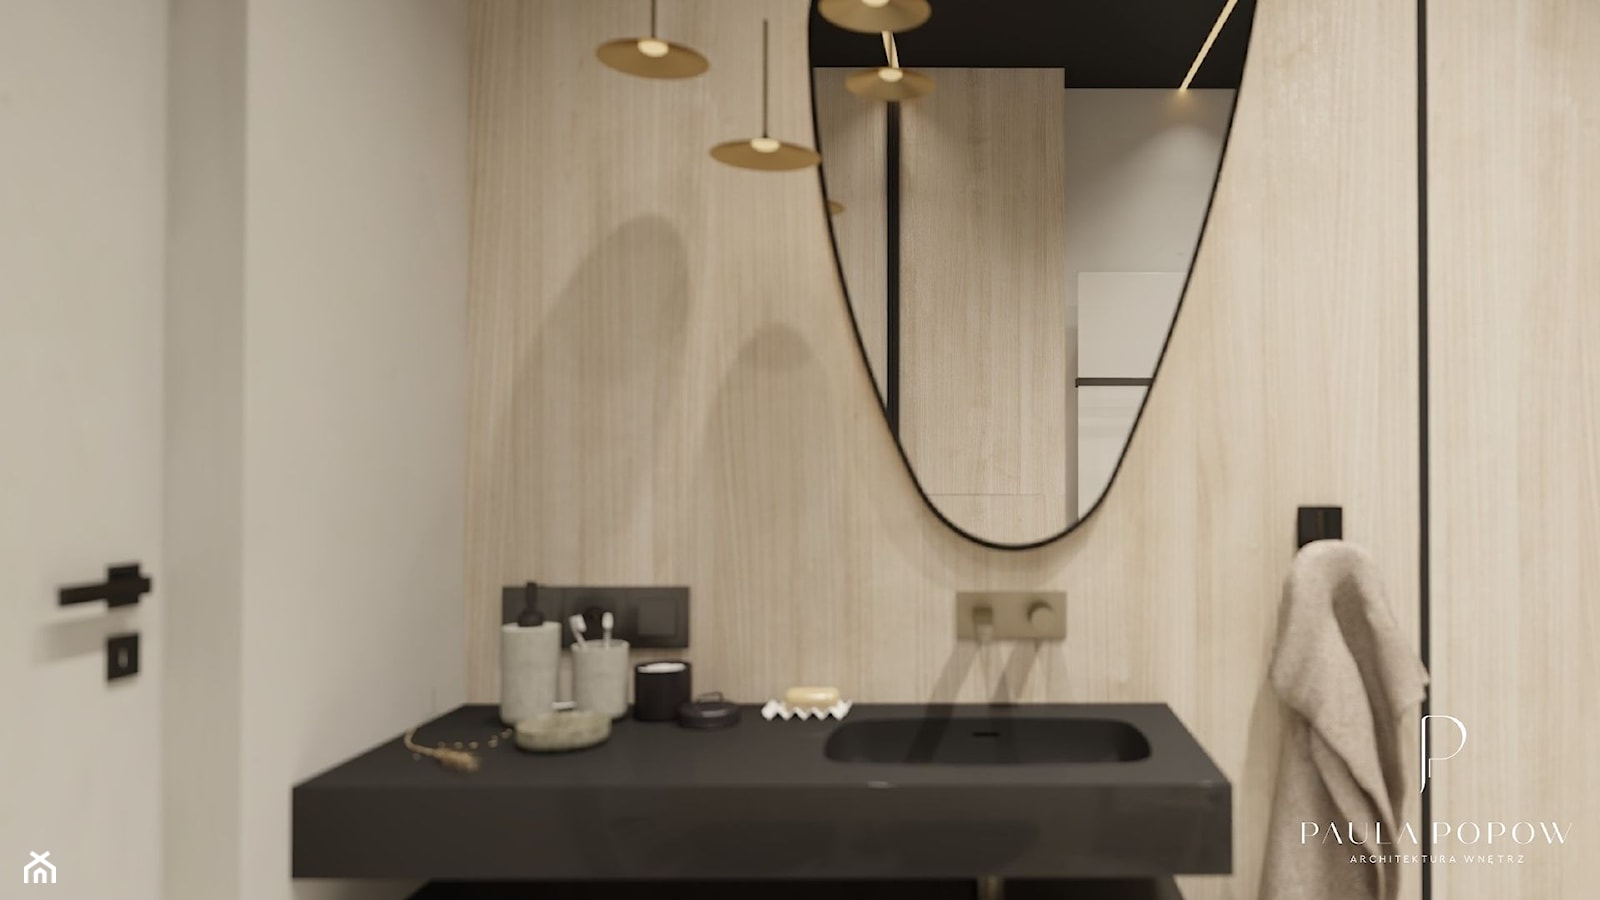 kremowa łazienka japandi, jasne drewno, czarne dodatki, złoto matowe, mikrocement, mikrobeton - zdjęcie od Paula Popow projektowanie wnętrz - Homebook